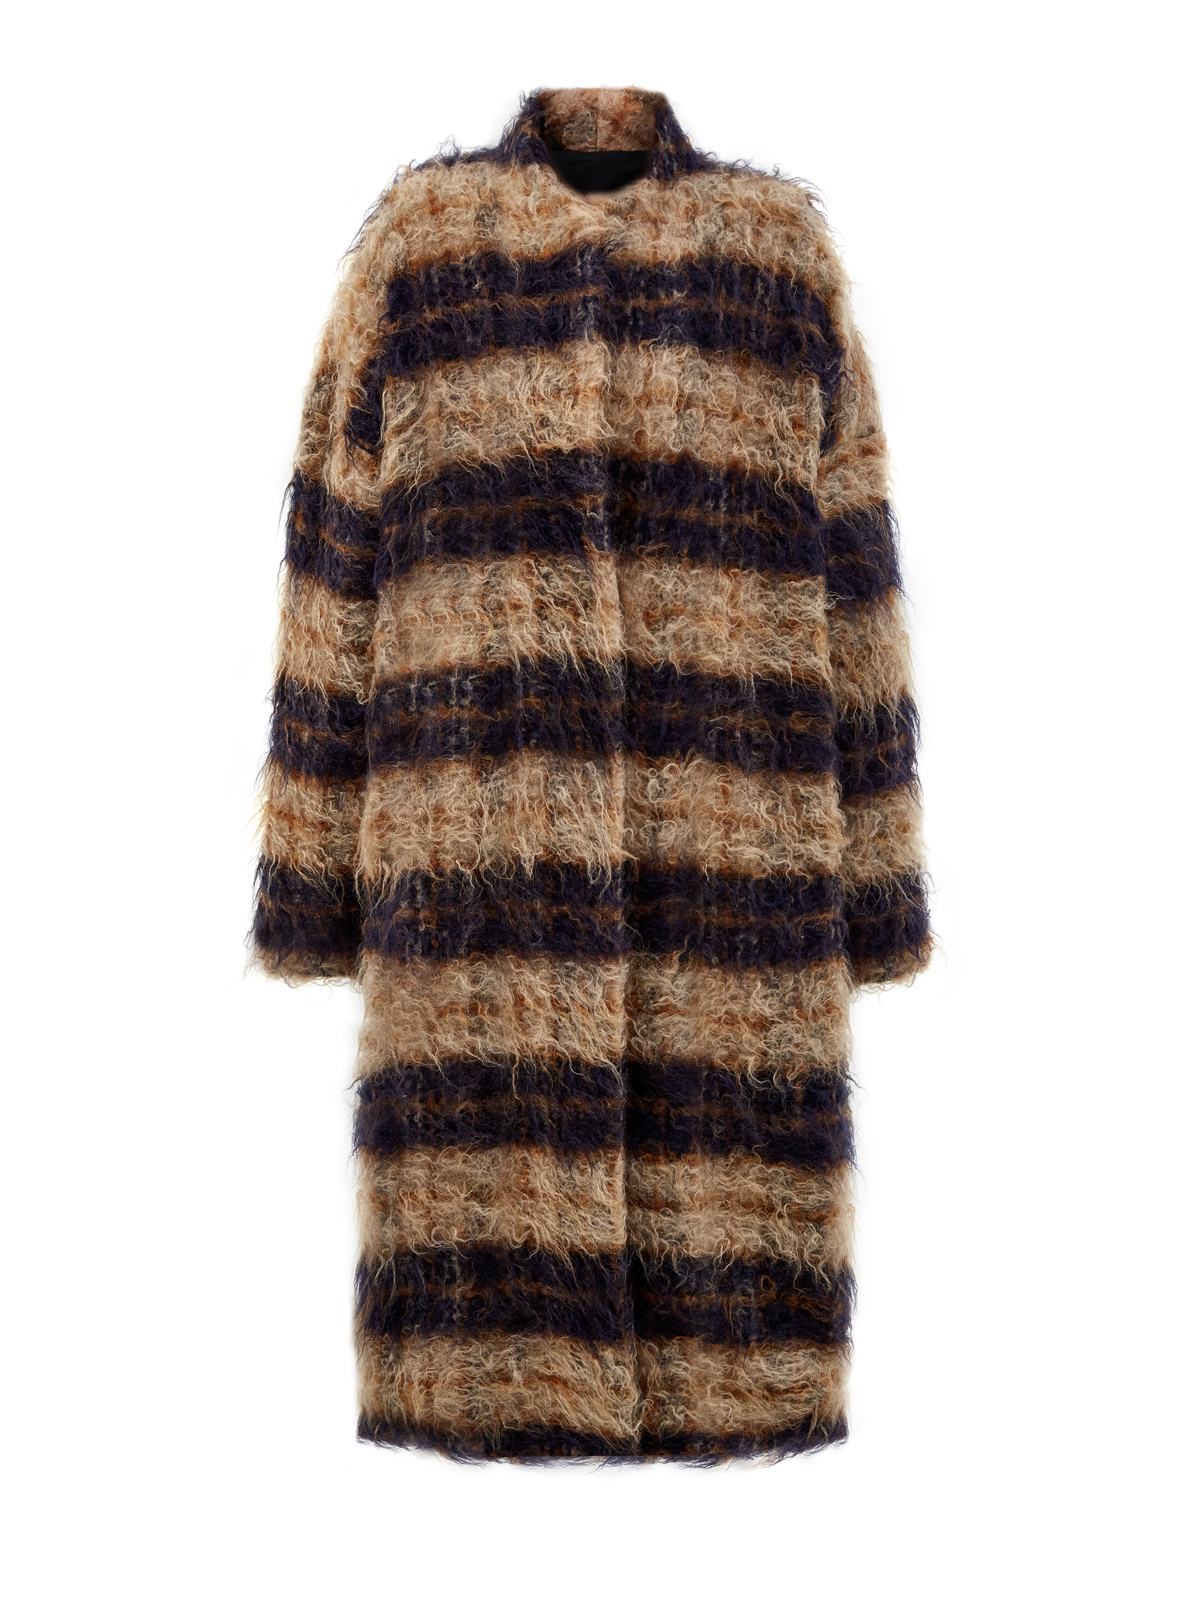 Объемное пальто из эко-меха, мохера и шерсти в полоску GENTRYPORTOFINO, цвет коричневый, размер 44